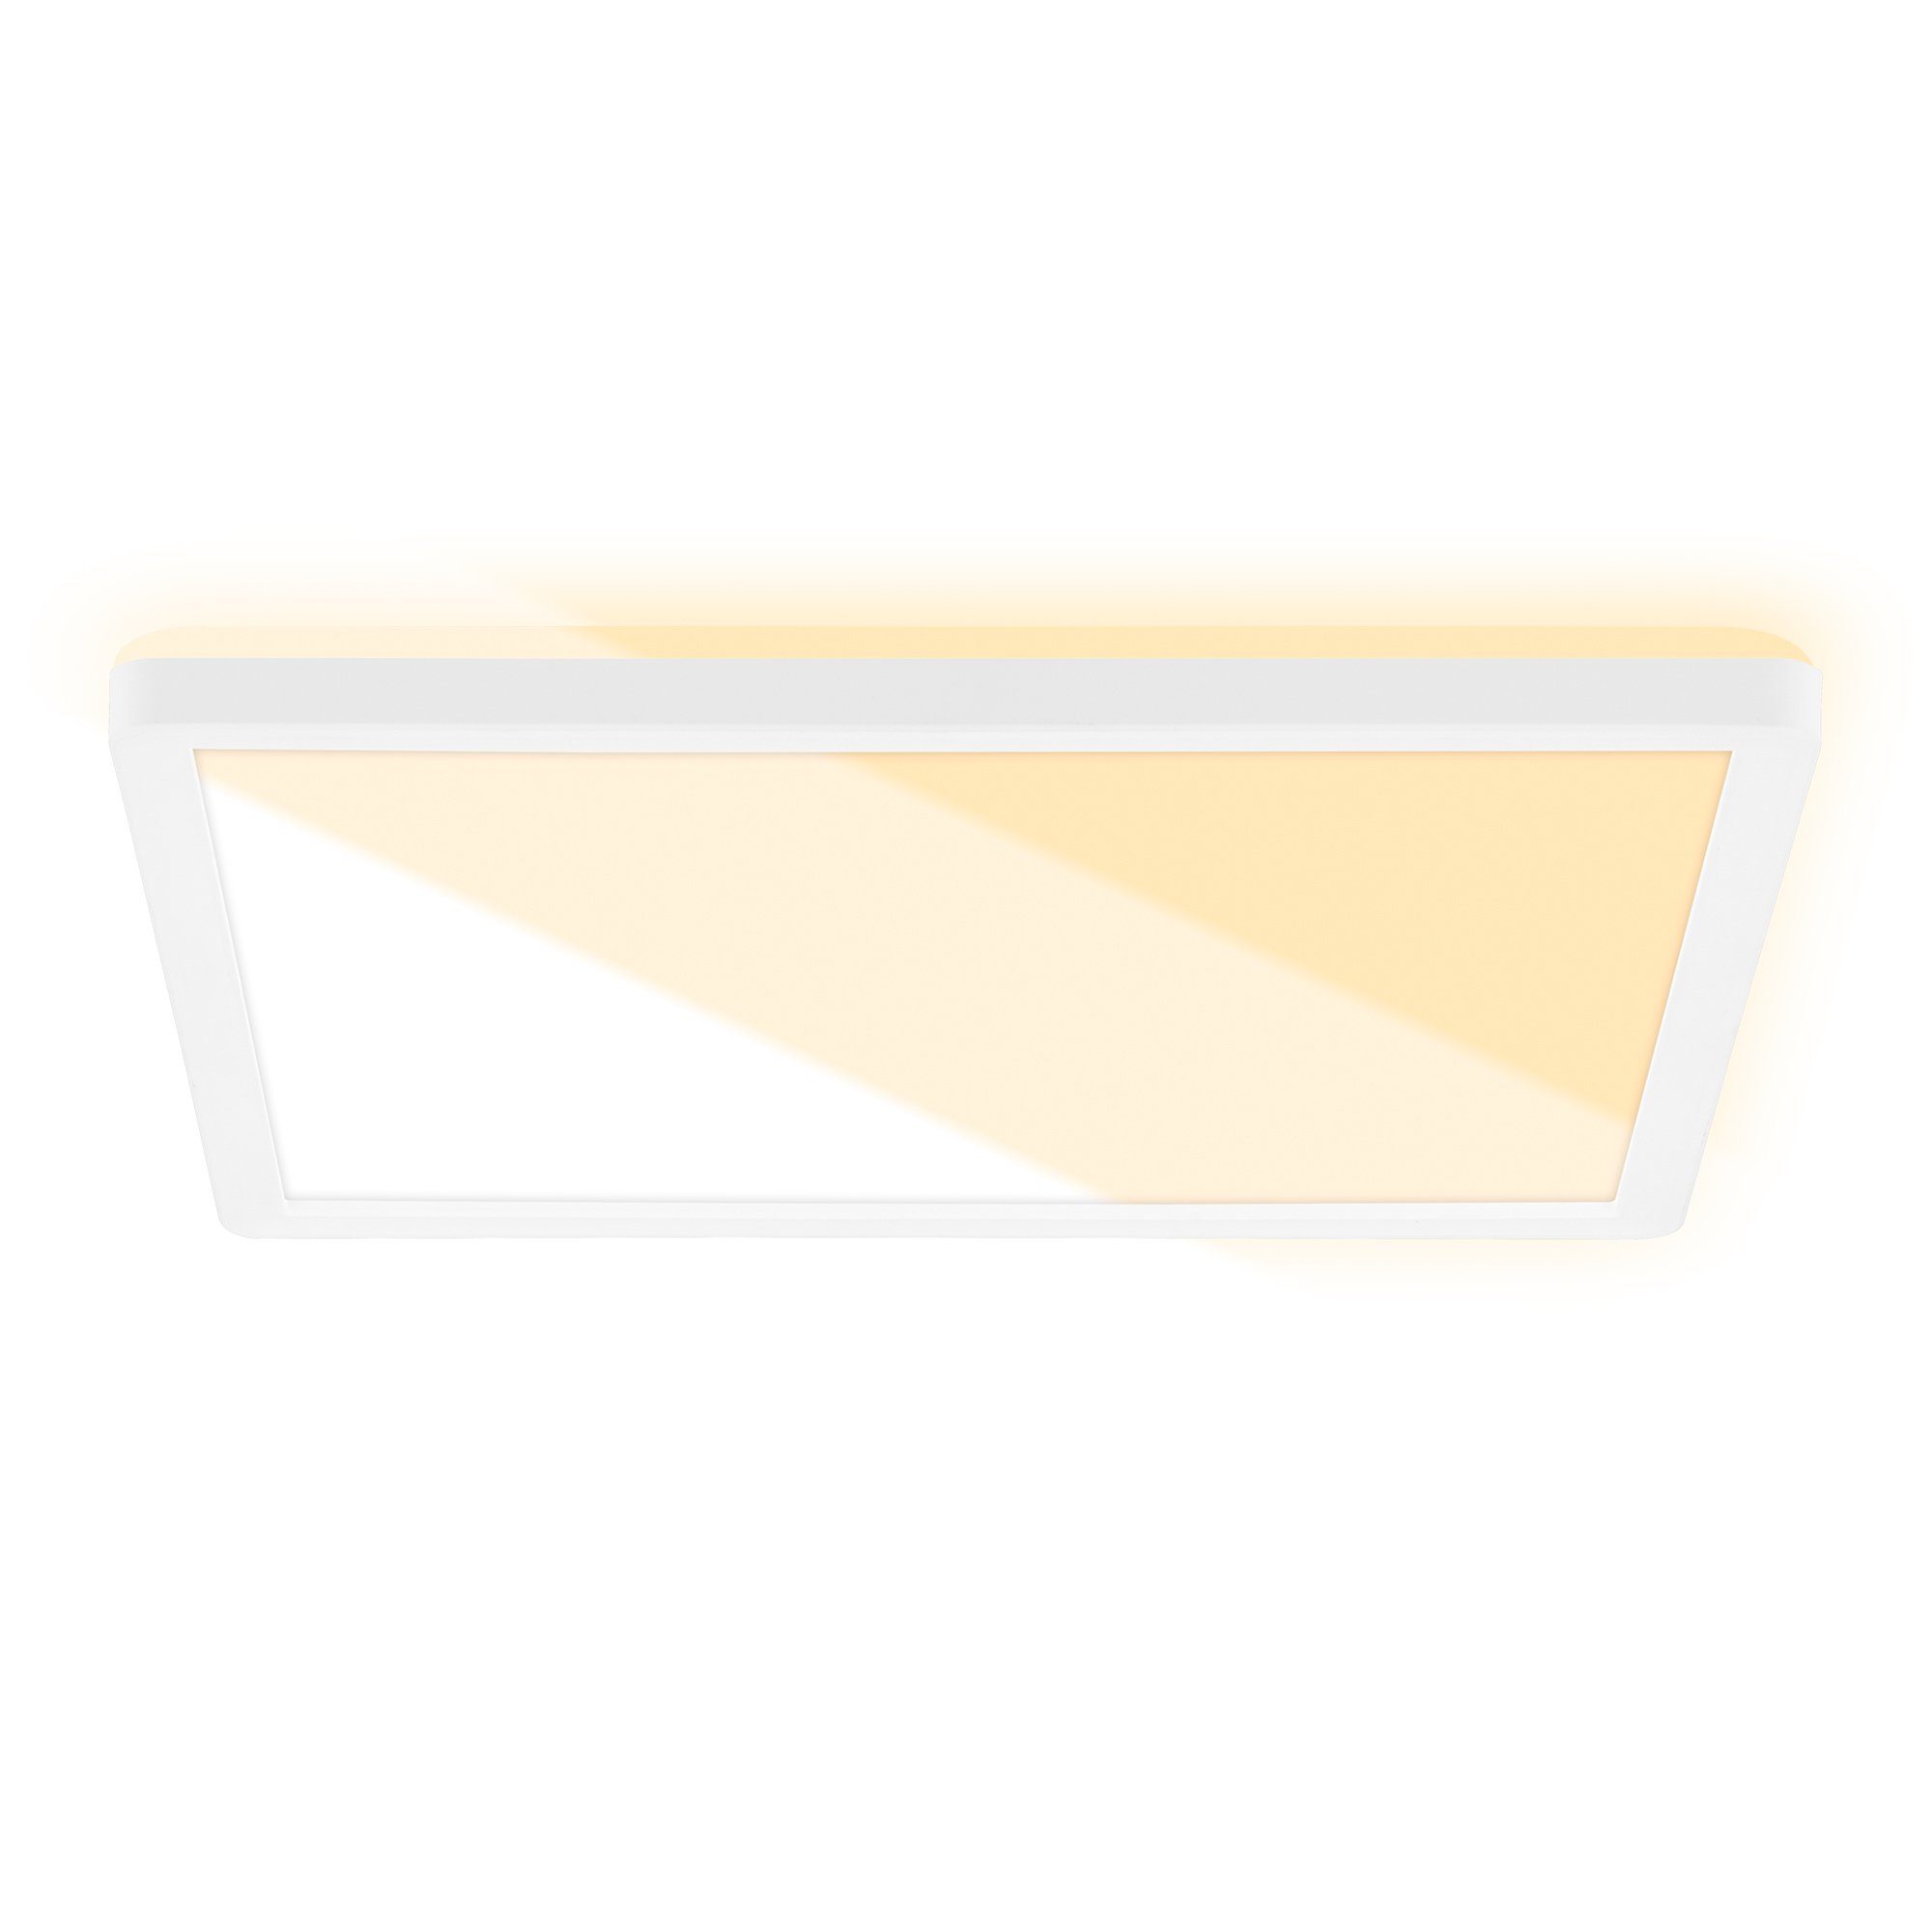 Briloner Leuchten Panel 7556016, CTS Weißtonwechsel, indirektes Licht, LED fest verbaut, Neutralweiß, Warmweiß, Deckenlampe, 29,9 x 29,3 x 2,8 cm, Weiß, 18W, ultraflach, Wohnzimmer